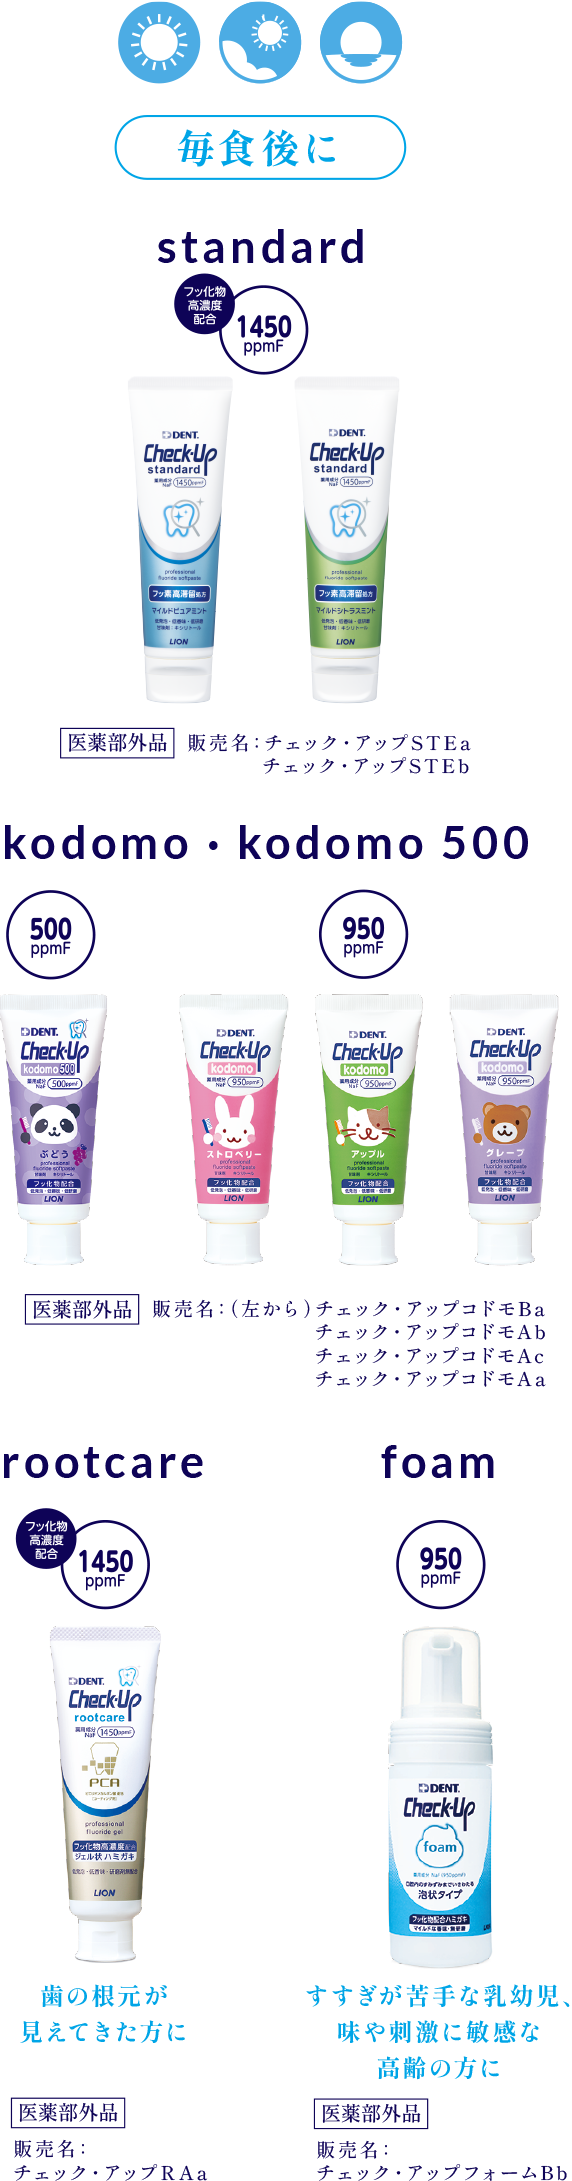 毎食後に standard Kodomo ・ kodomo500 rootcare foam